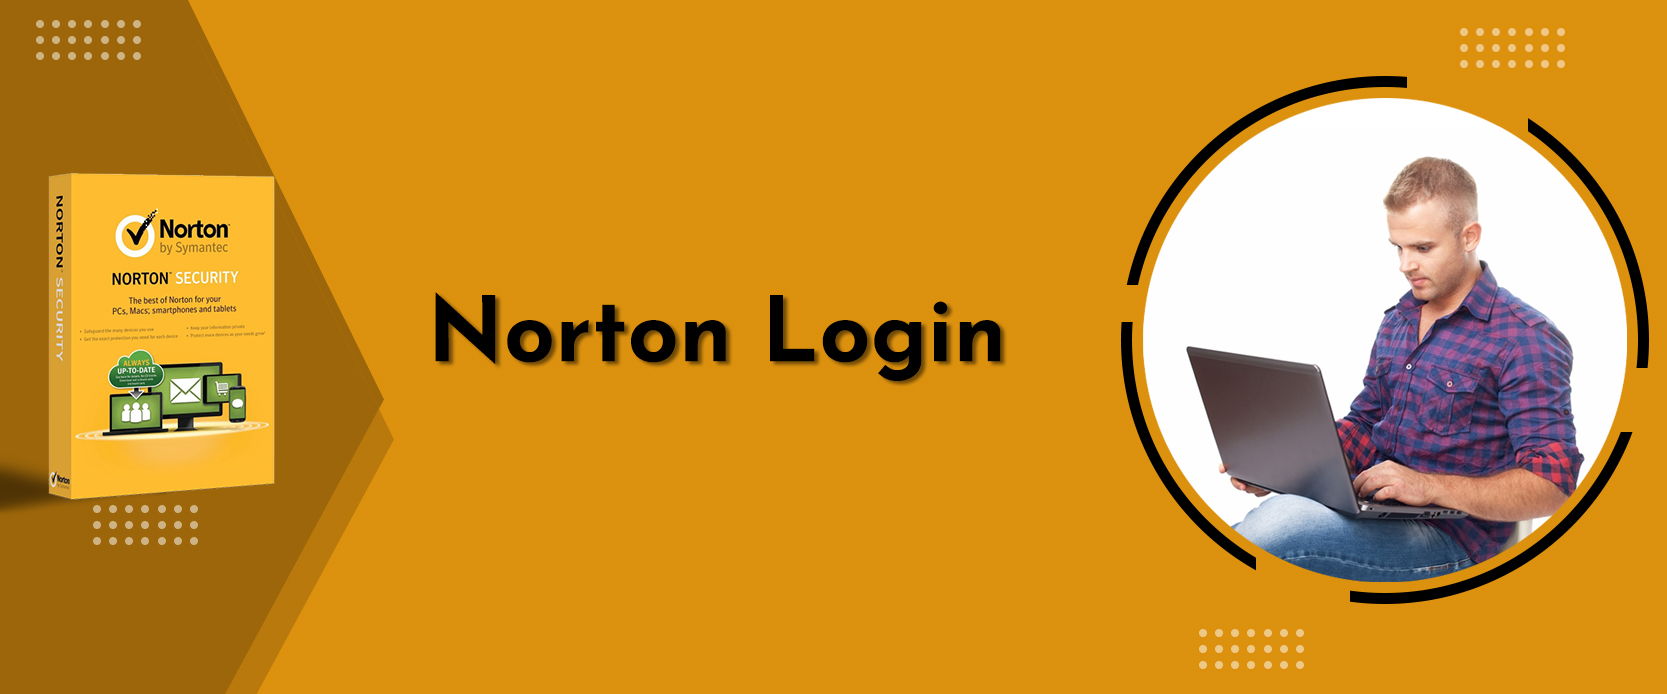 norton360 login